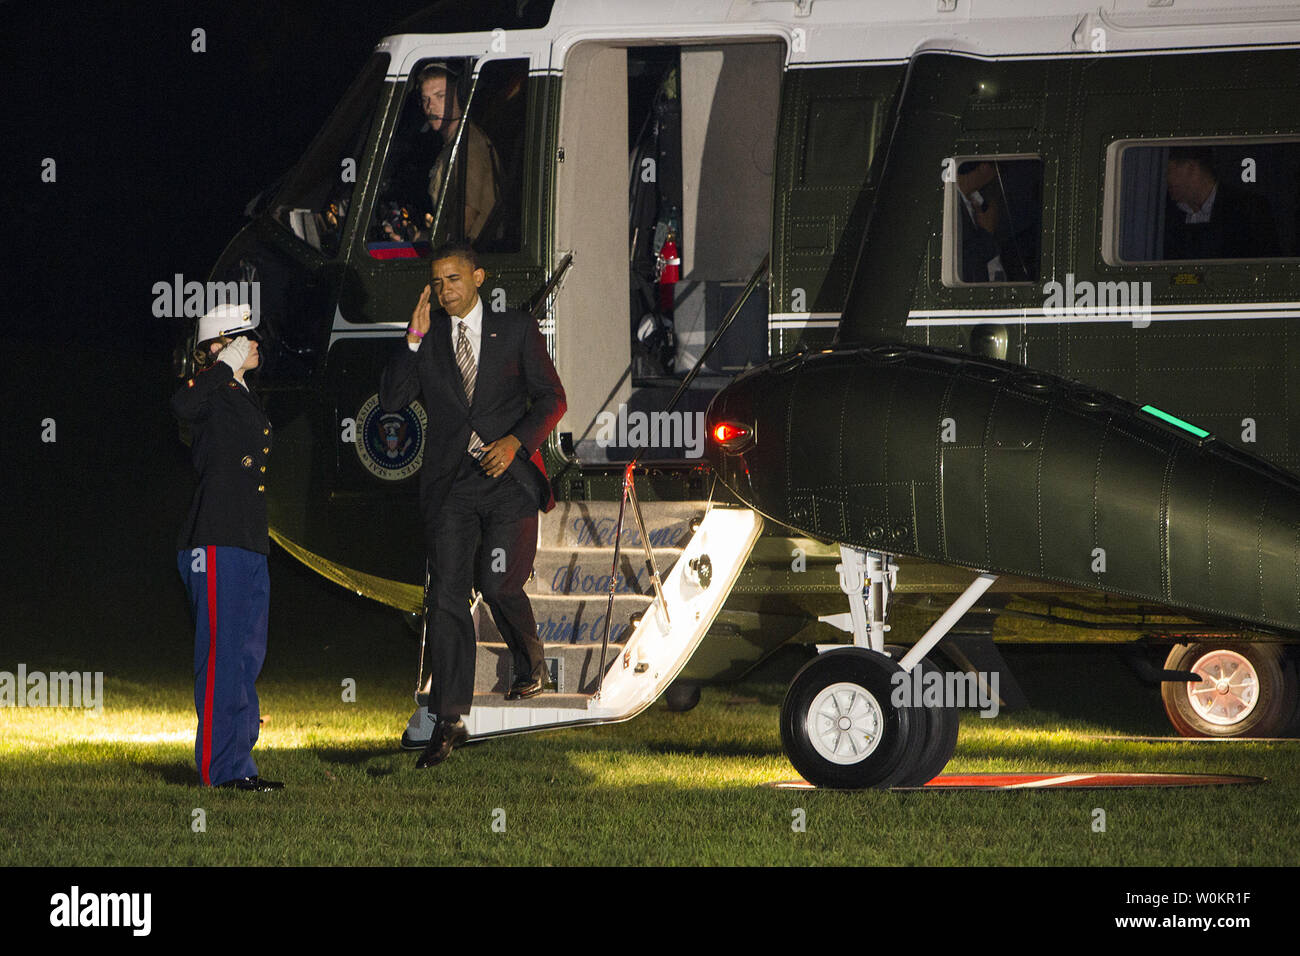 25 octobre 2012 - Washington, D.C. - Le président Barack Obama marche à travers la pelouse Sud de la Maison Blanche après le retour d'une série d'événements de campagne à travers le pays. Crédit photo : Kristoffer Tripplaar/ Sipa Press Banque D'Images